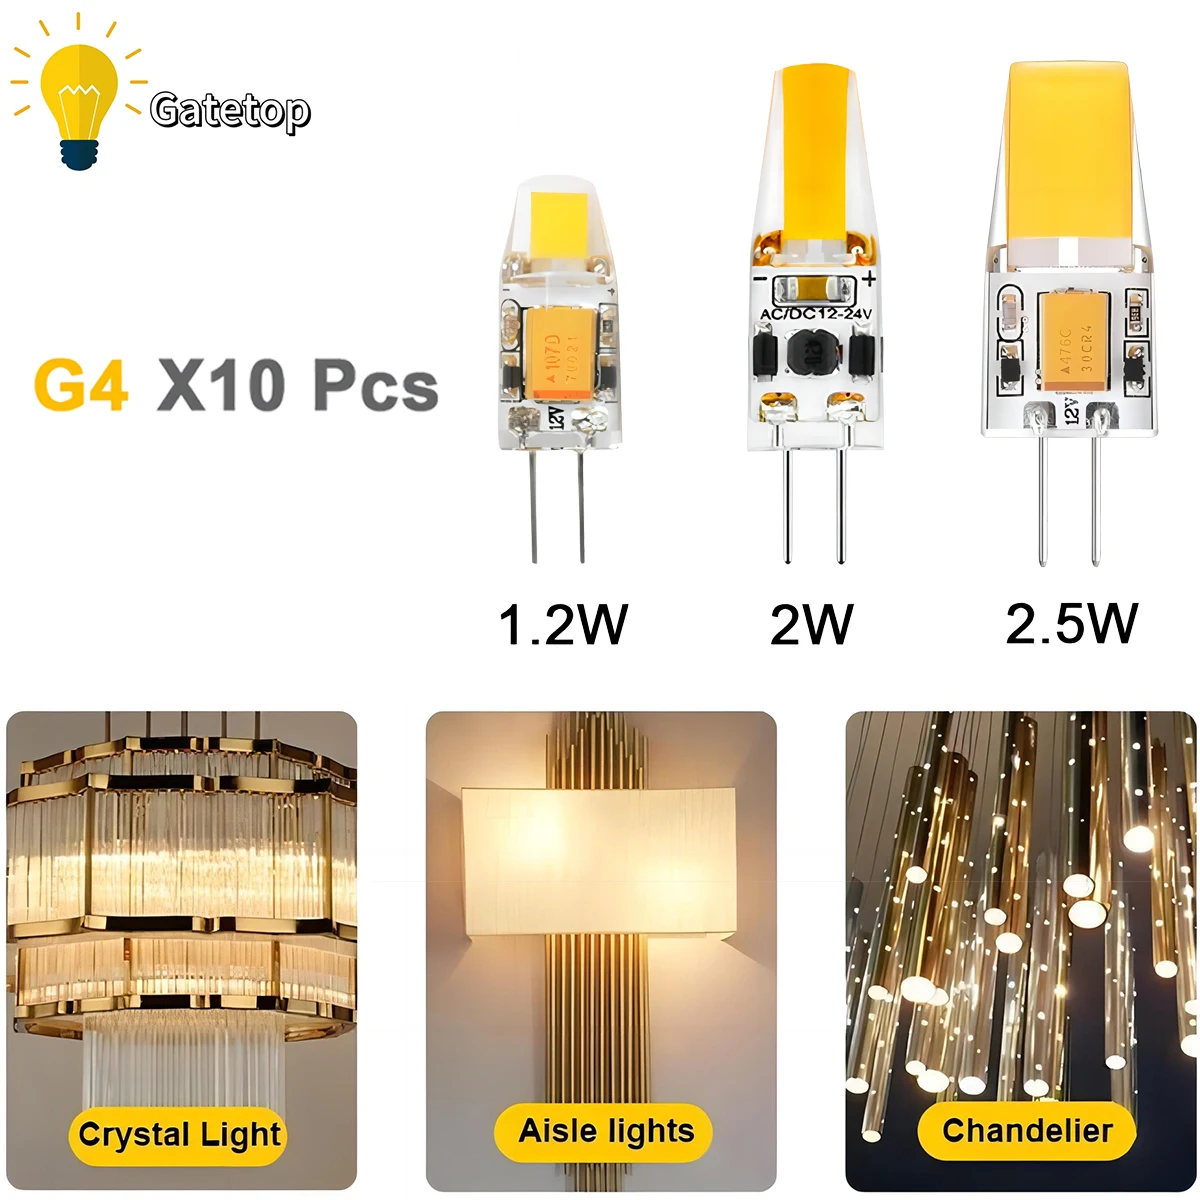 

10PCS 12V AC/DC G4 COB Lamp LED AC/DC 12V Corn Light 1.2W 2W 2.5W Spotlight Chandelier Bulb Replace Halogen Lamps